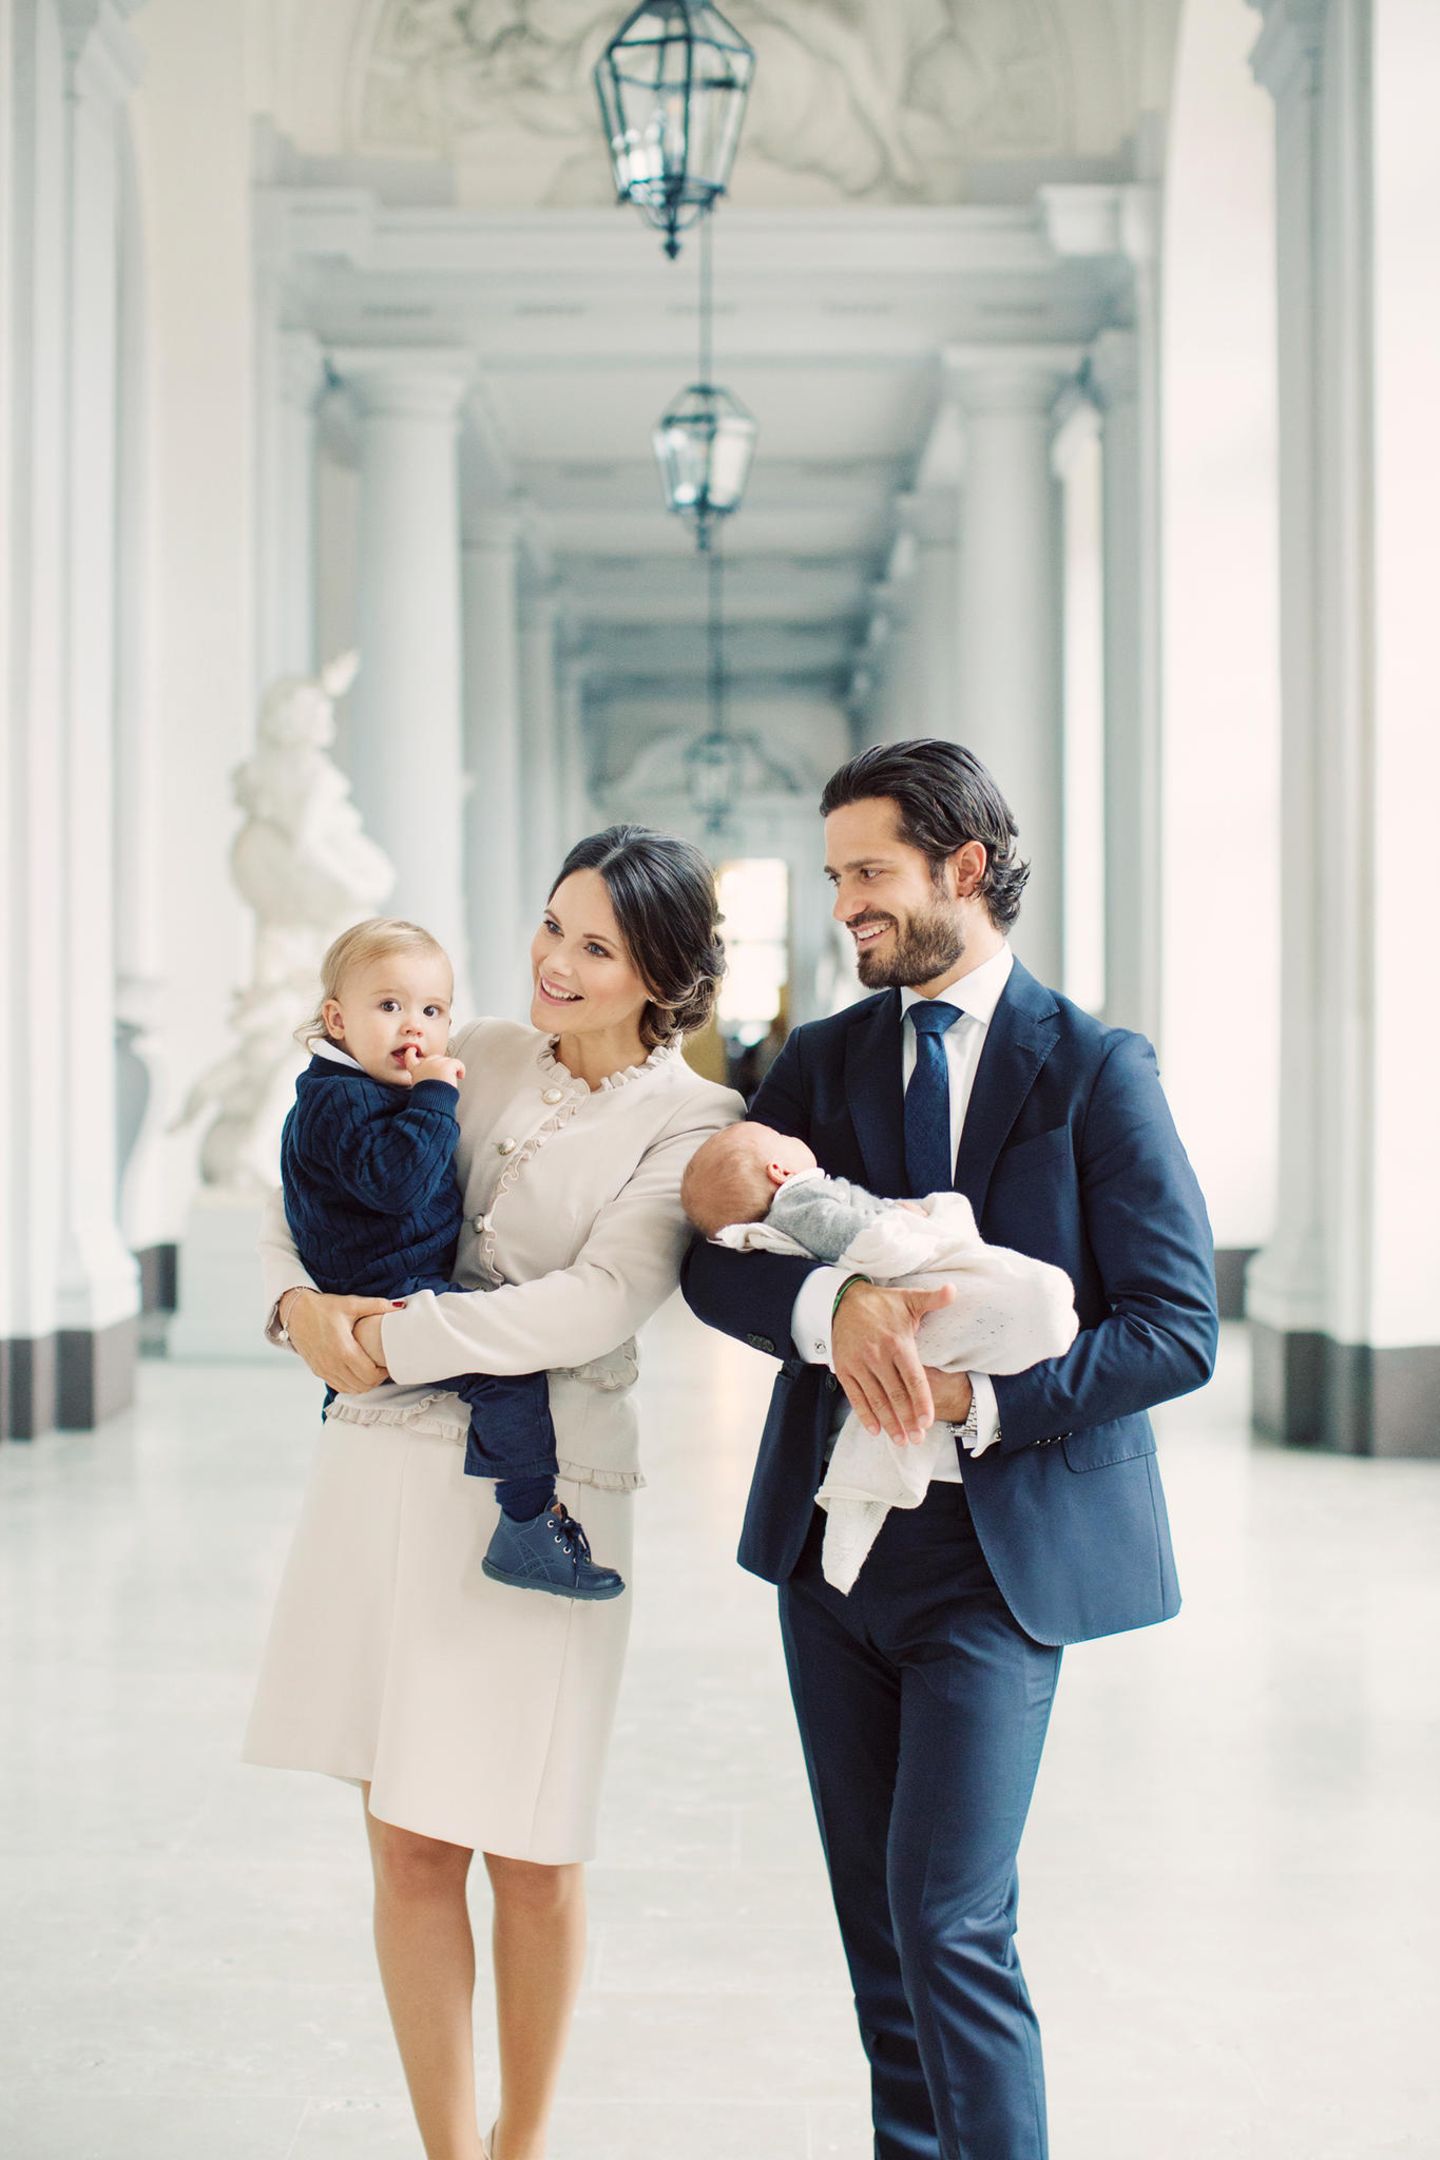 9. Oktober 2017  So ein süßes Dankeschön! Mit diesem niedlichen Familienfoto bedanken sich Prinzessin Sofia und Prinz Carl-Philip für die zahlreichen Glückwünsche zur Geburt von Prinz Gabriel.